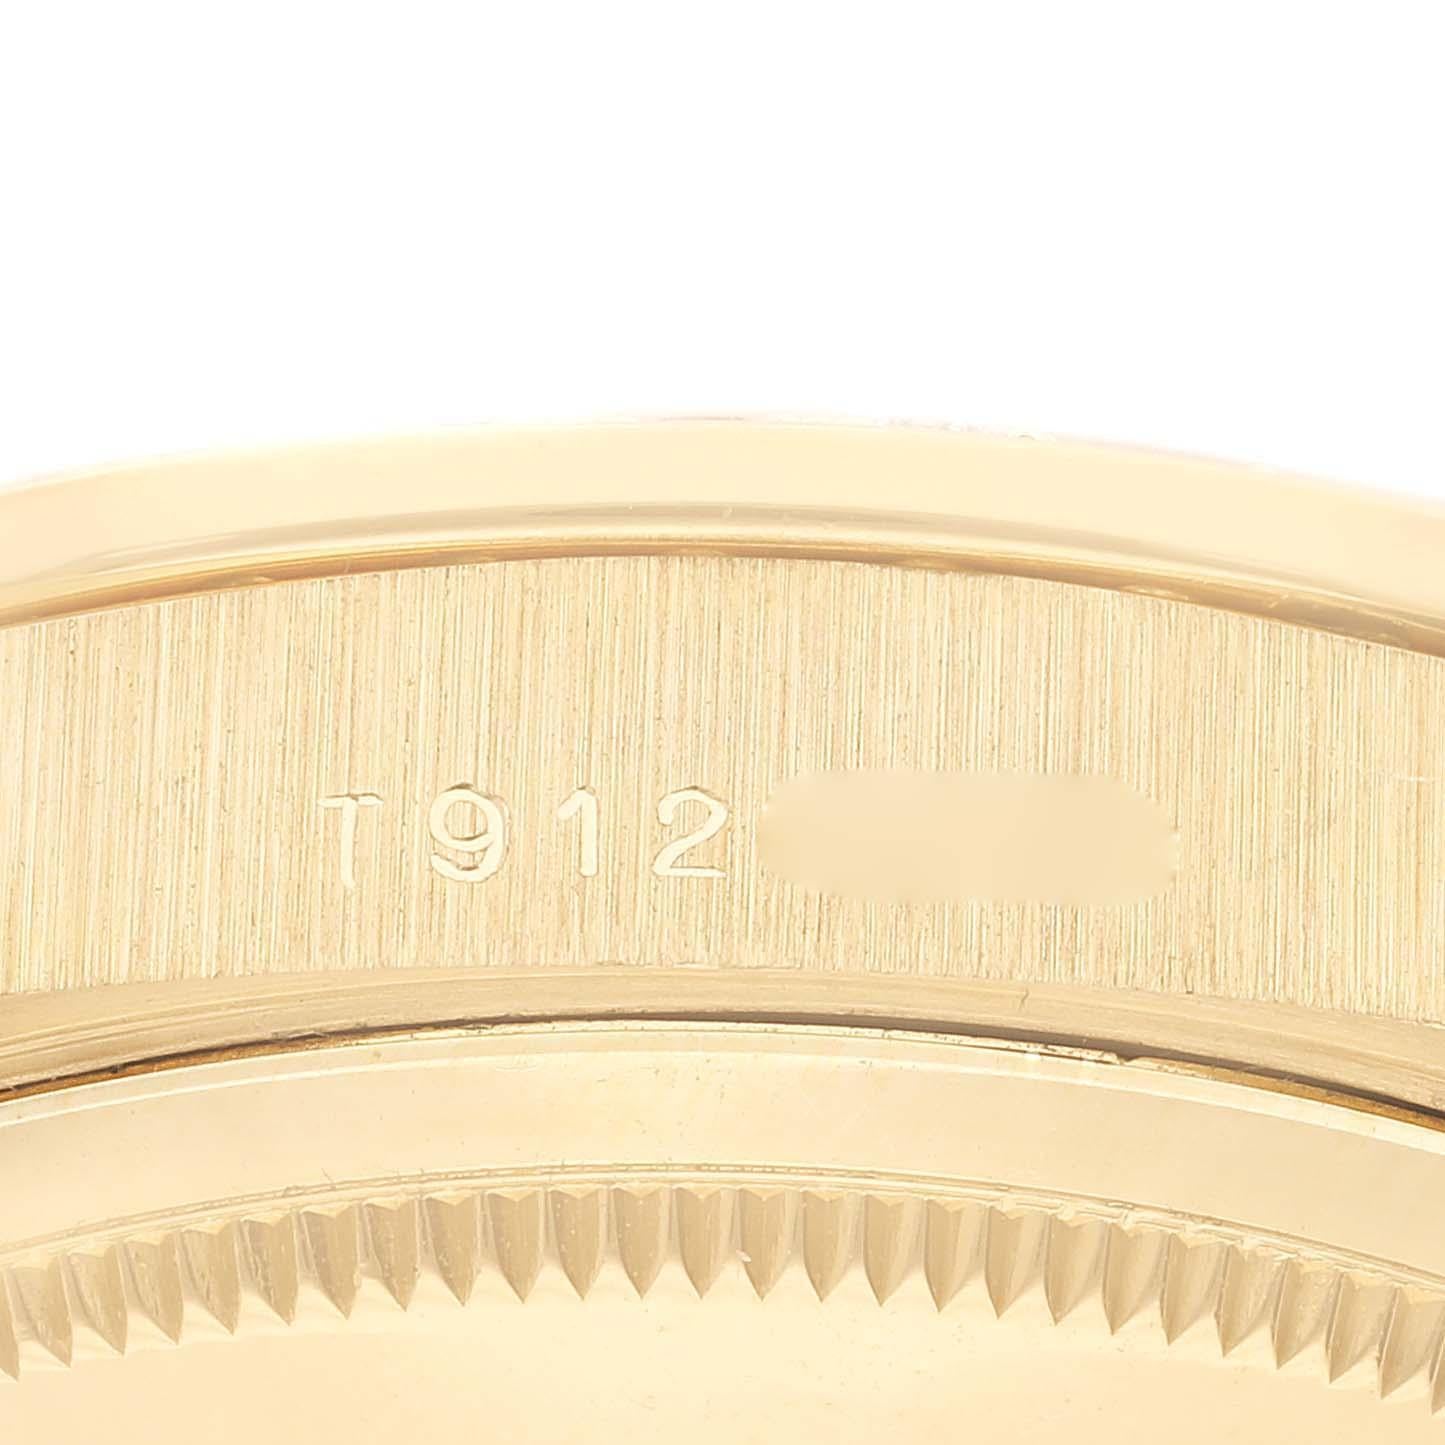 Rolex President Day Date 36mm Gelbgold Diamant Herrenuhr 18348. Offiziell zertifiziertes Chronometer-Automatikwerk mit automatischem Aufzug. Oyster-Gehäuse aus 18 Karat Gelbgold mit einem Durchmesser von 36 mm. Rolex Logo auf einer Krone. Original